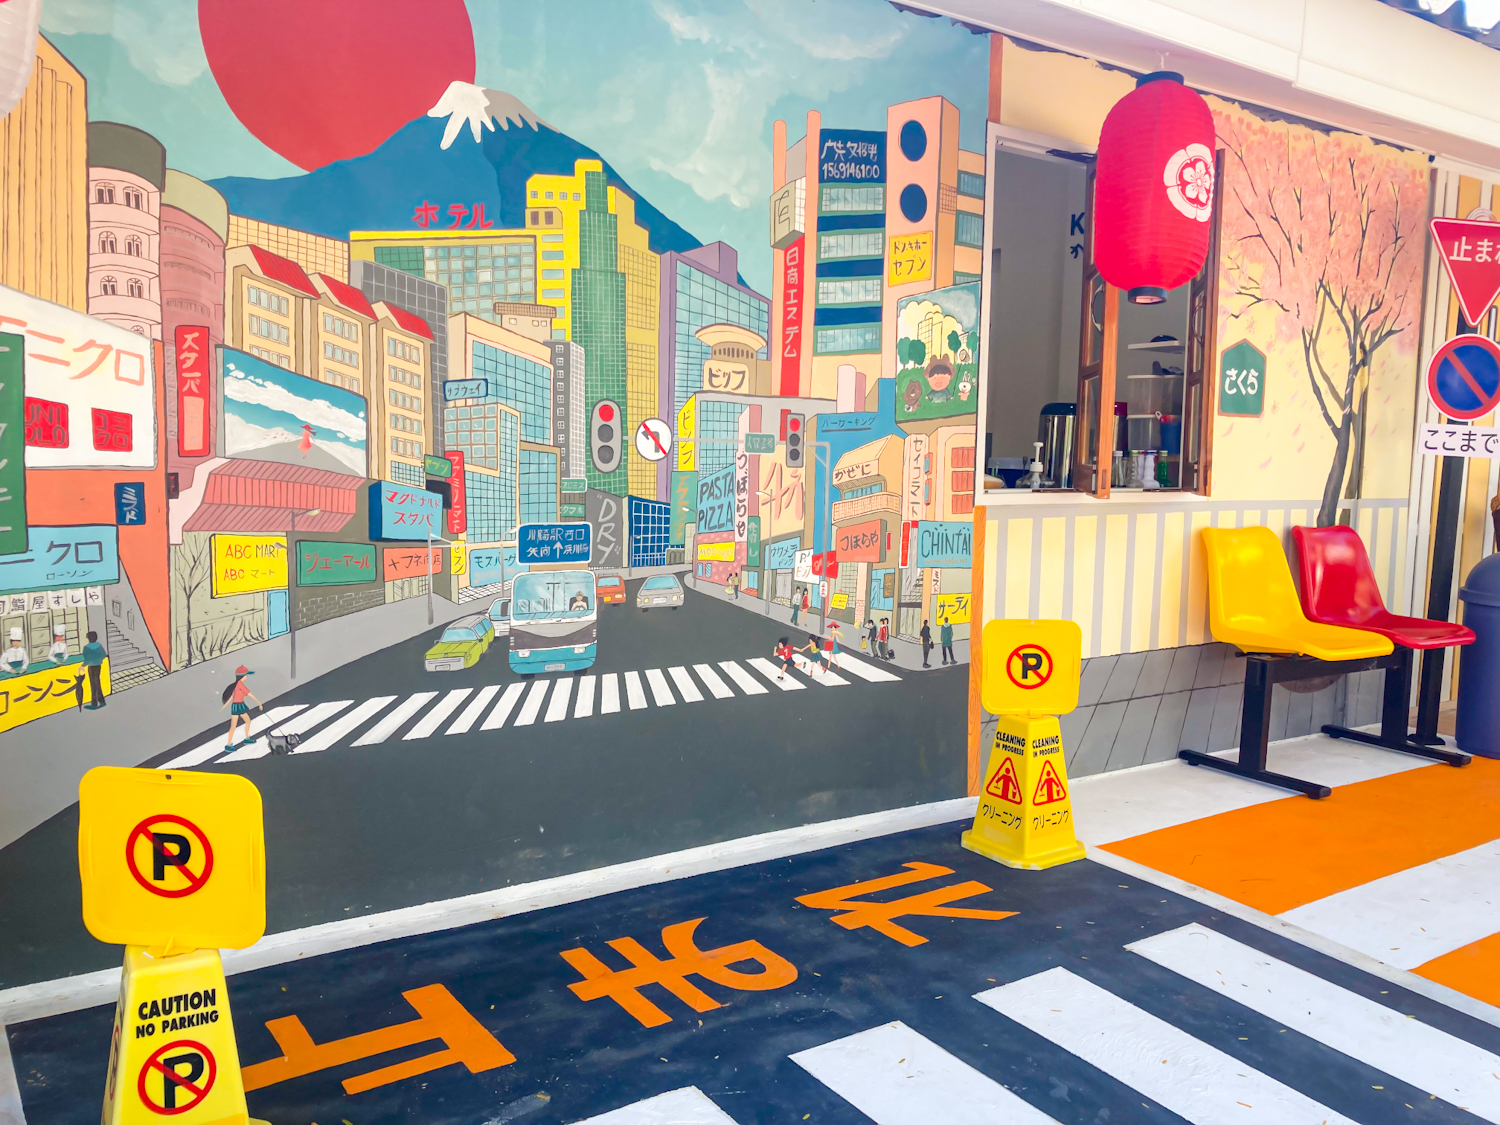 รูปภาพของ Ka-nom ร้านของชำสไตล์ญี่ปุ่น เจ้าแรกในตรัง